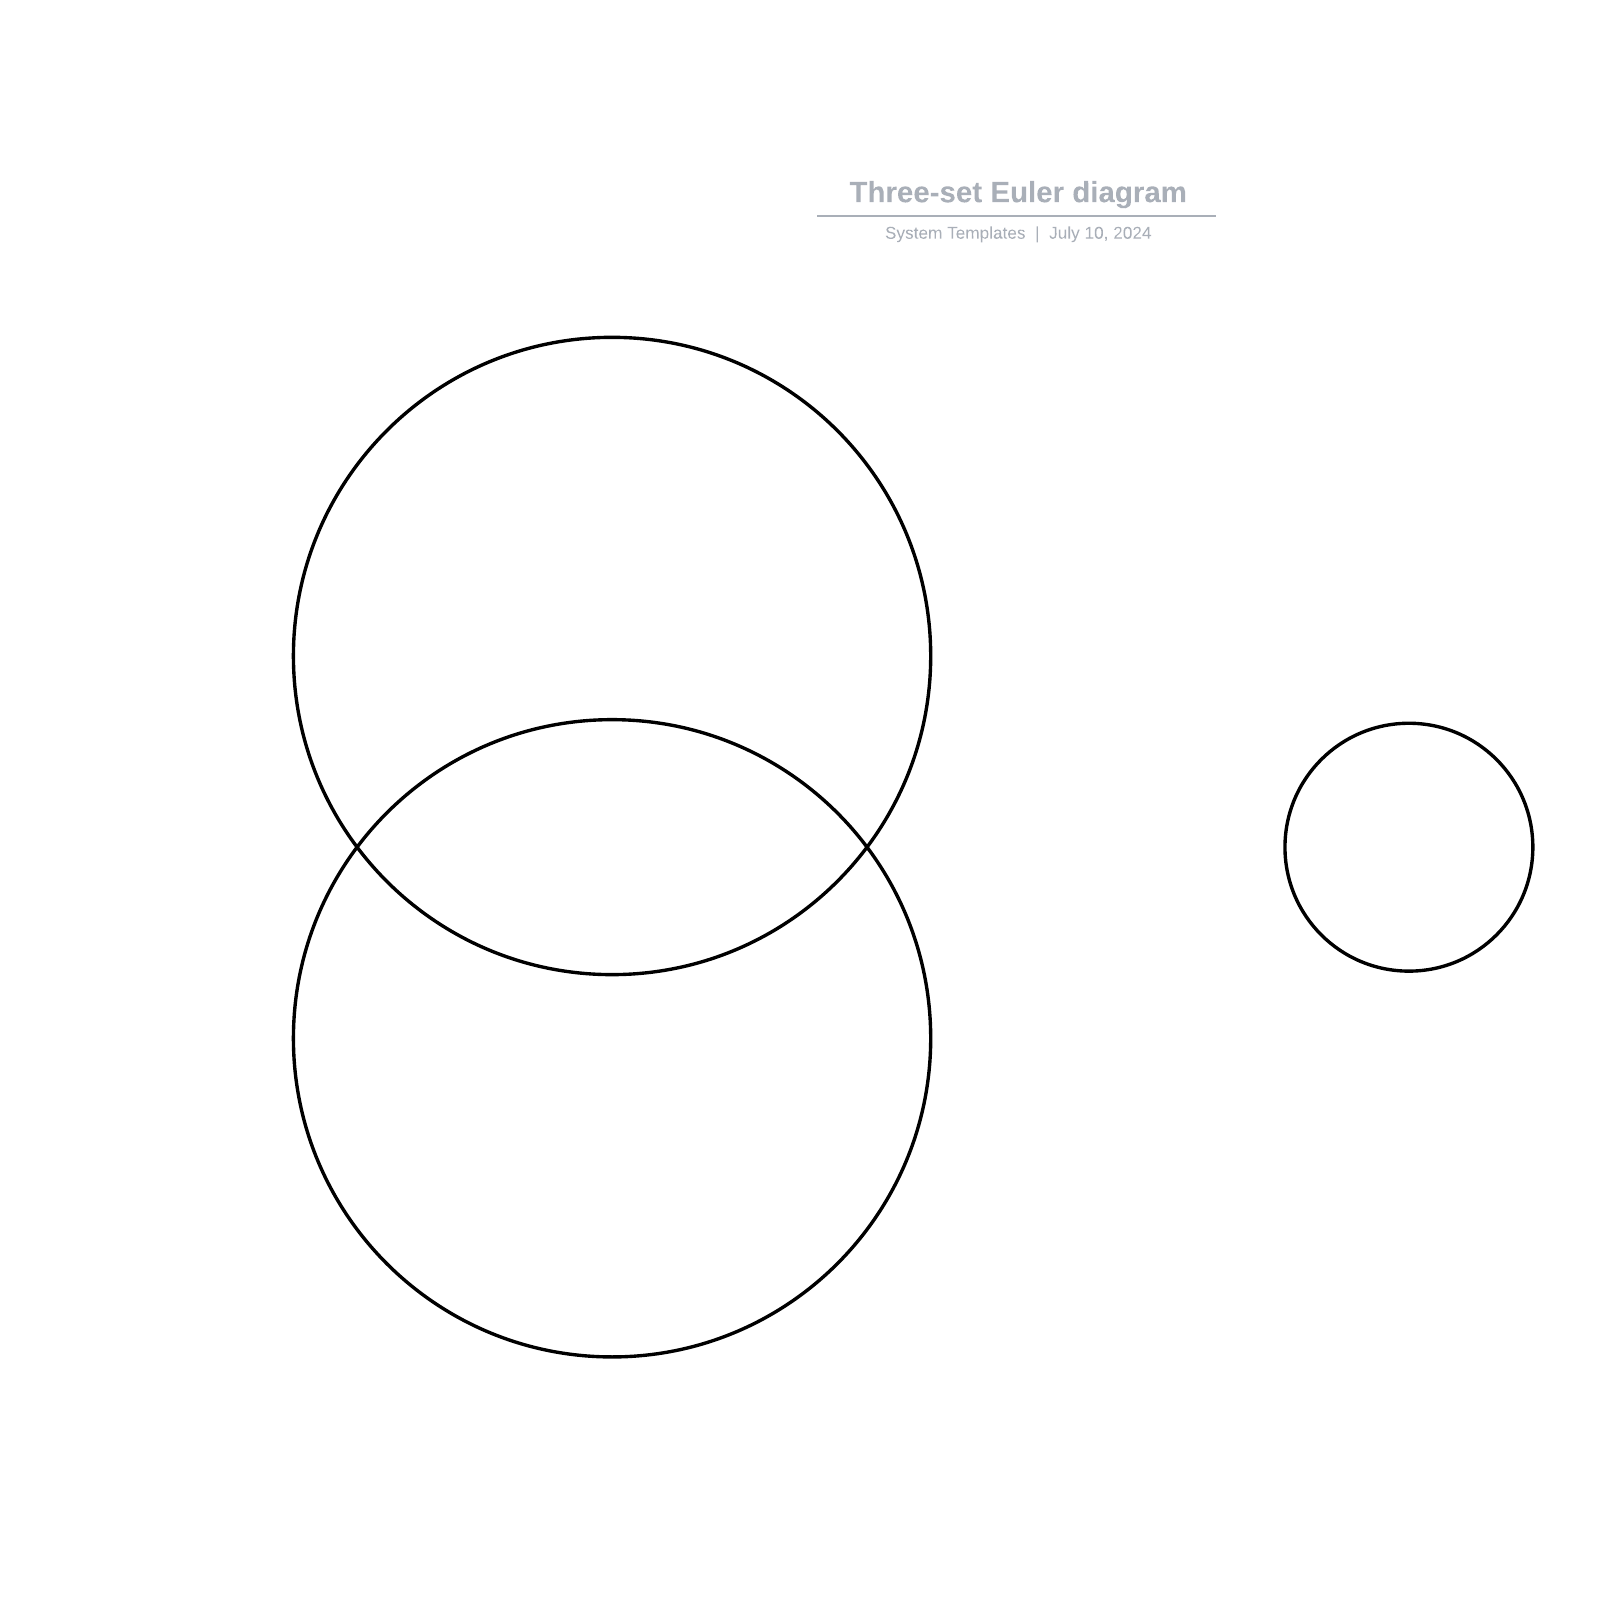 Three-set Euler diagram example